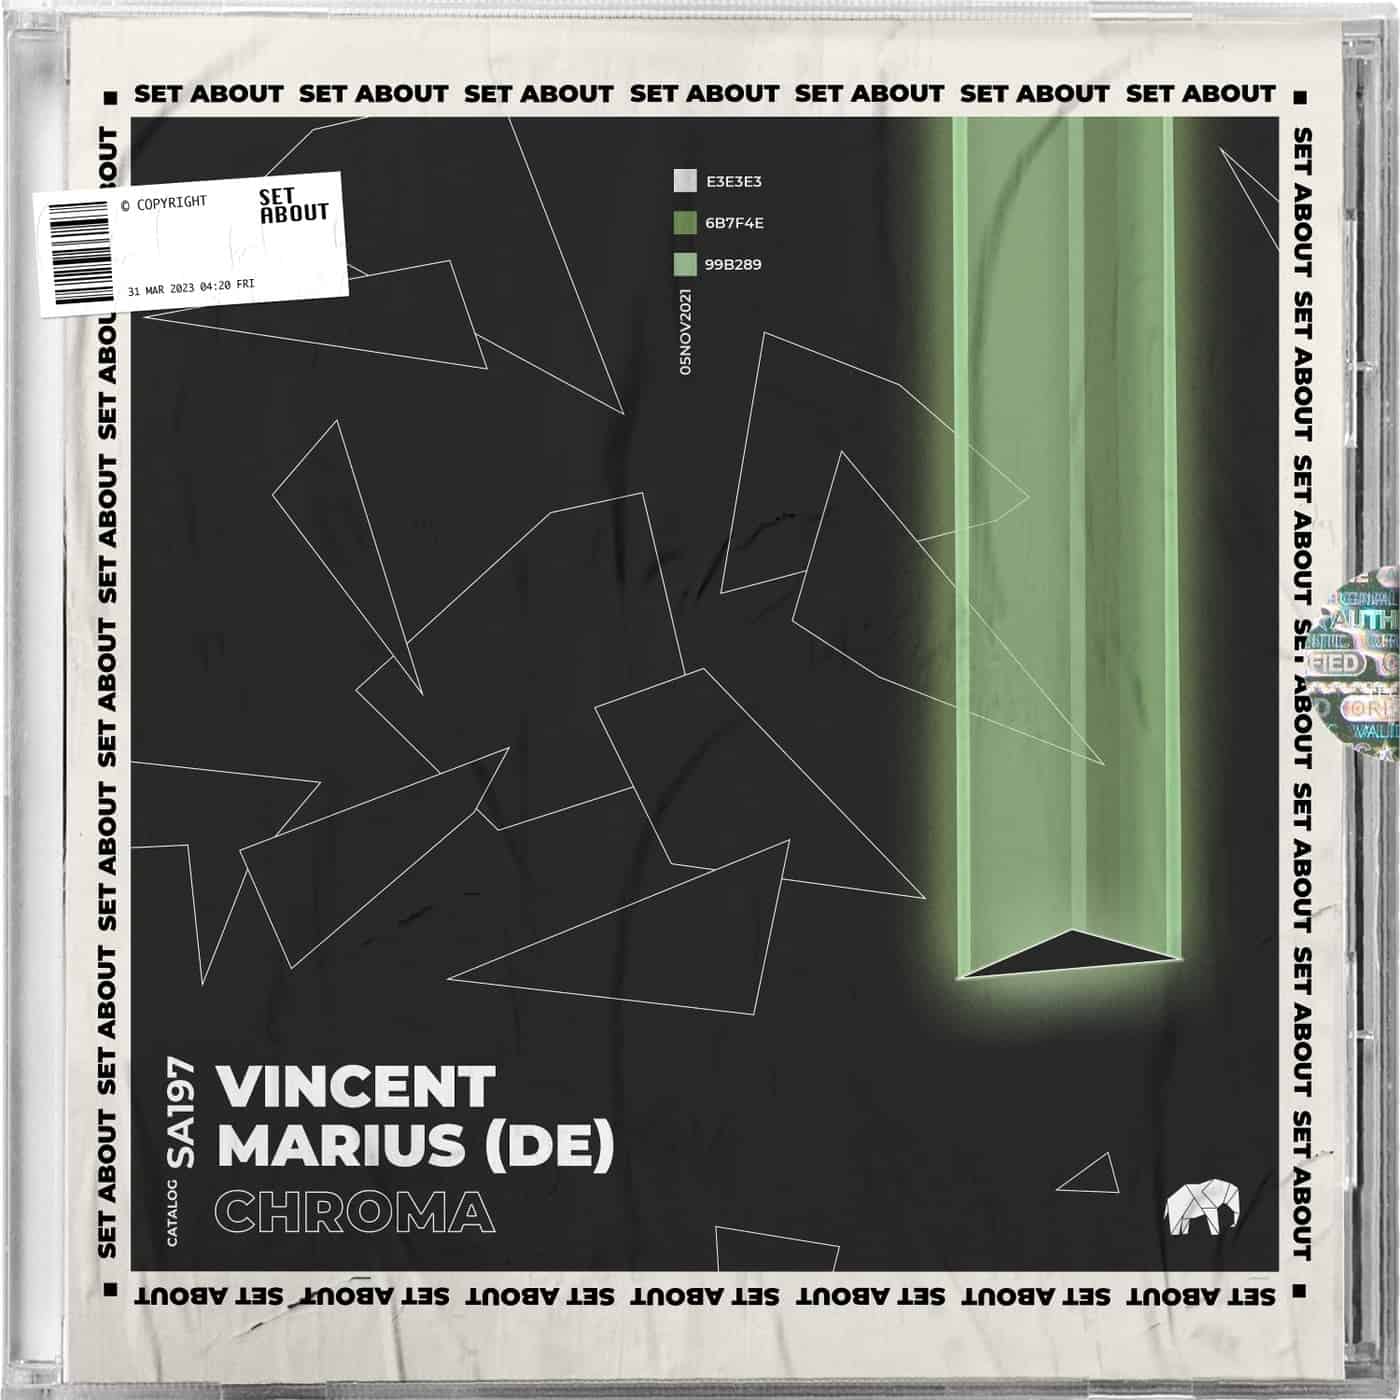 Download Vincent, MARIUS (DE) - Chroma on Electrobuzz